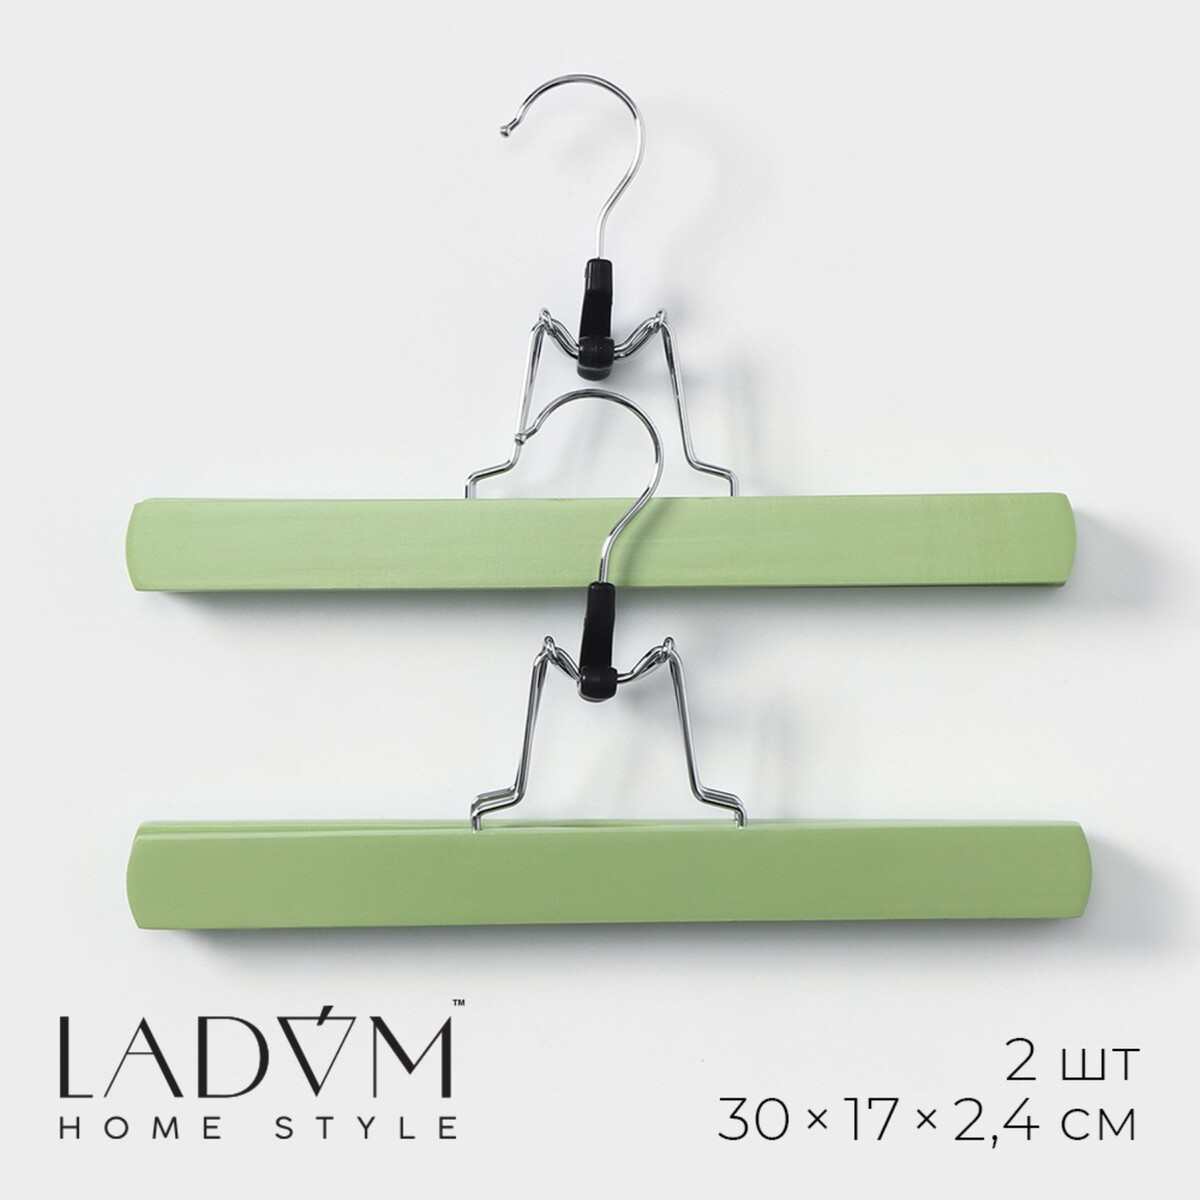 Вешалки деревянные для брюк и юбок ladо́m brillant, 30×17×2,4 см, 2 шт, цвет зеленый